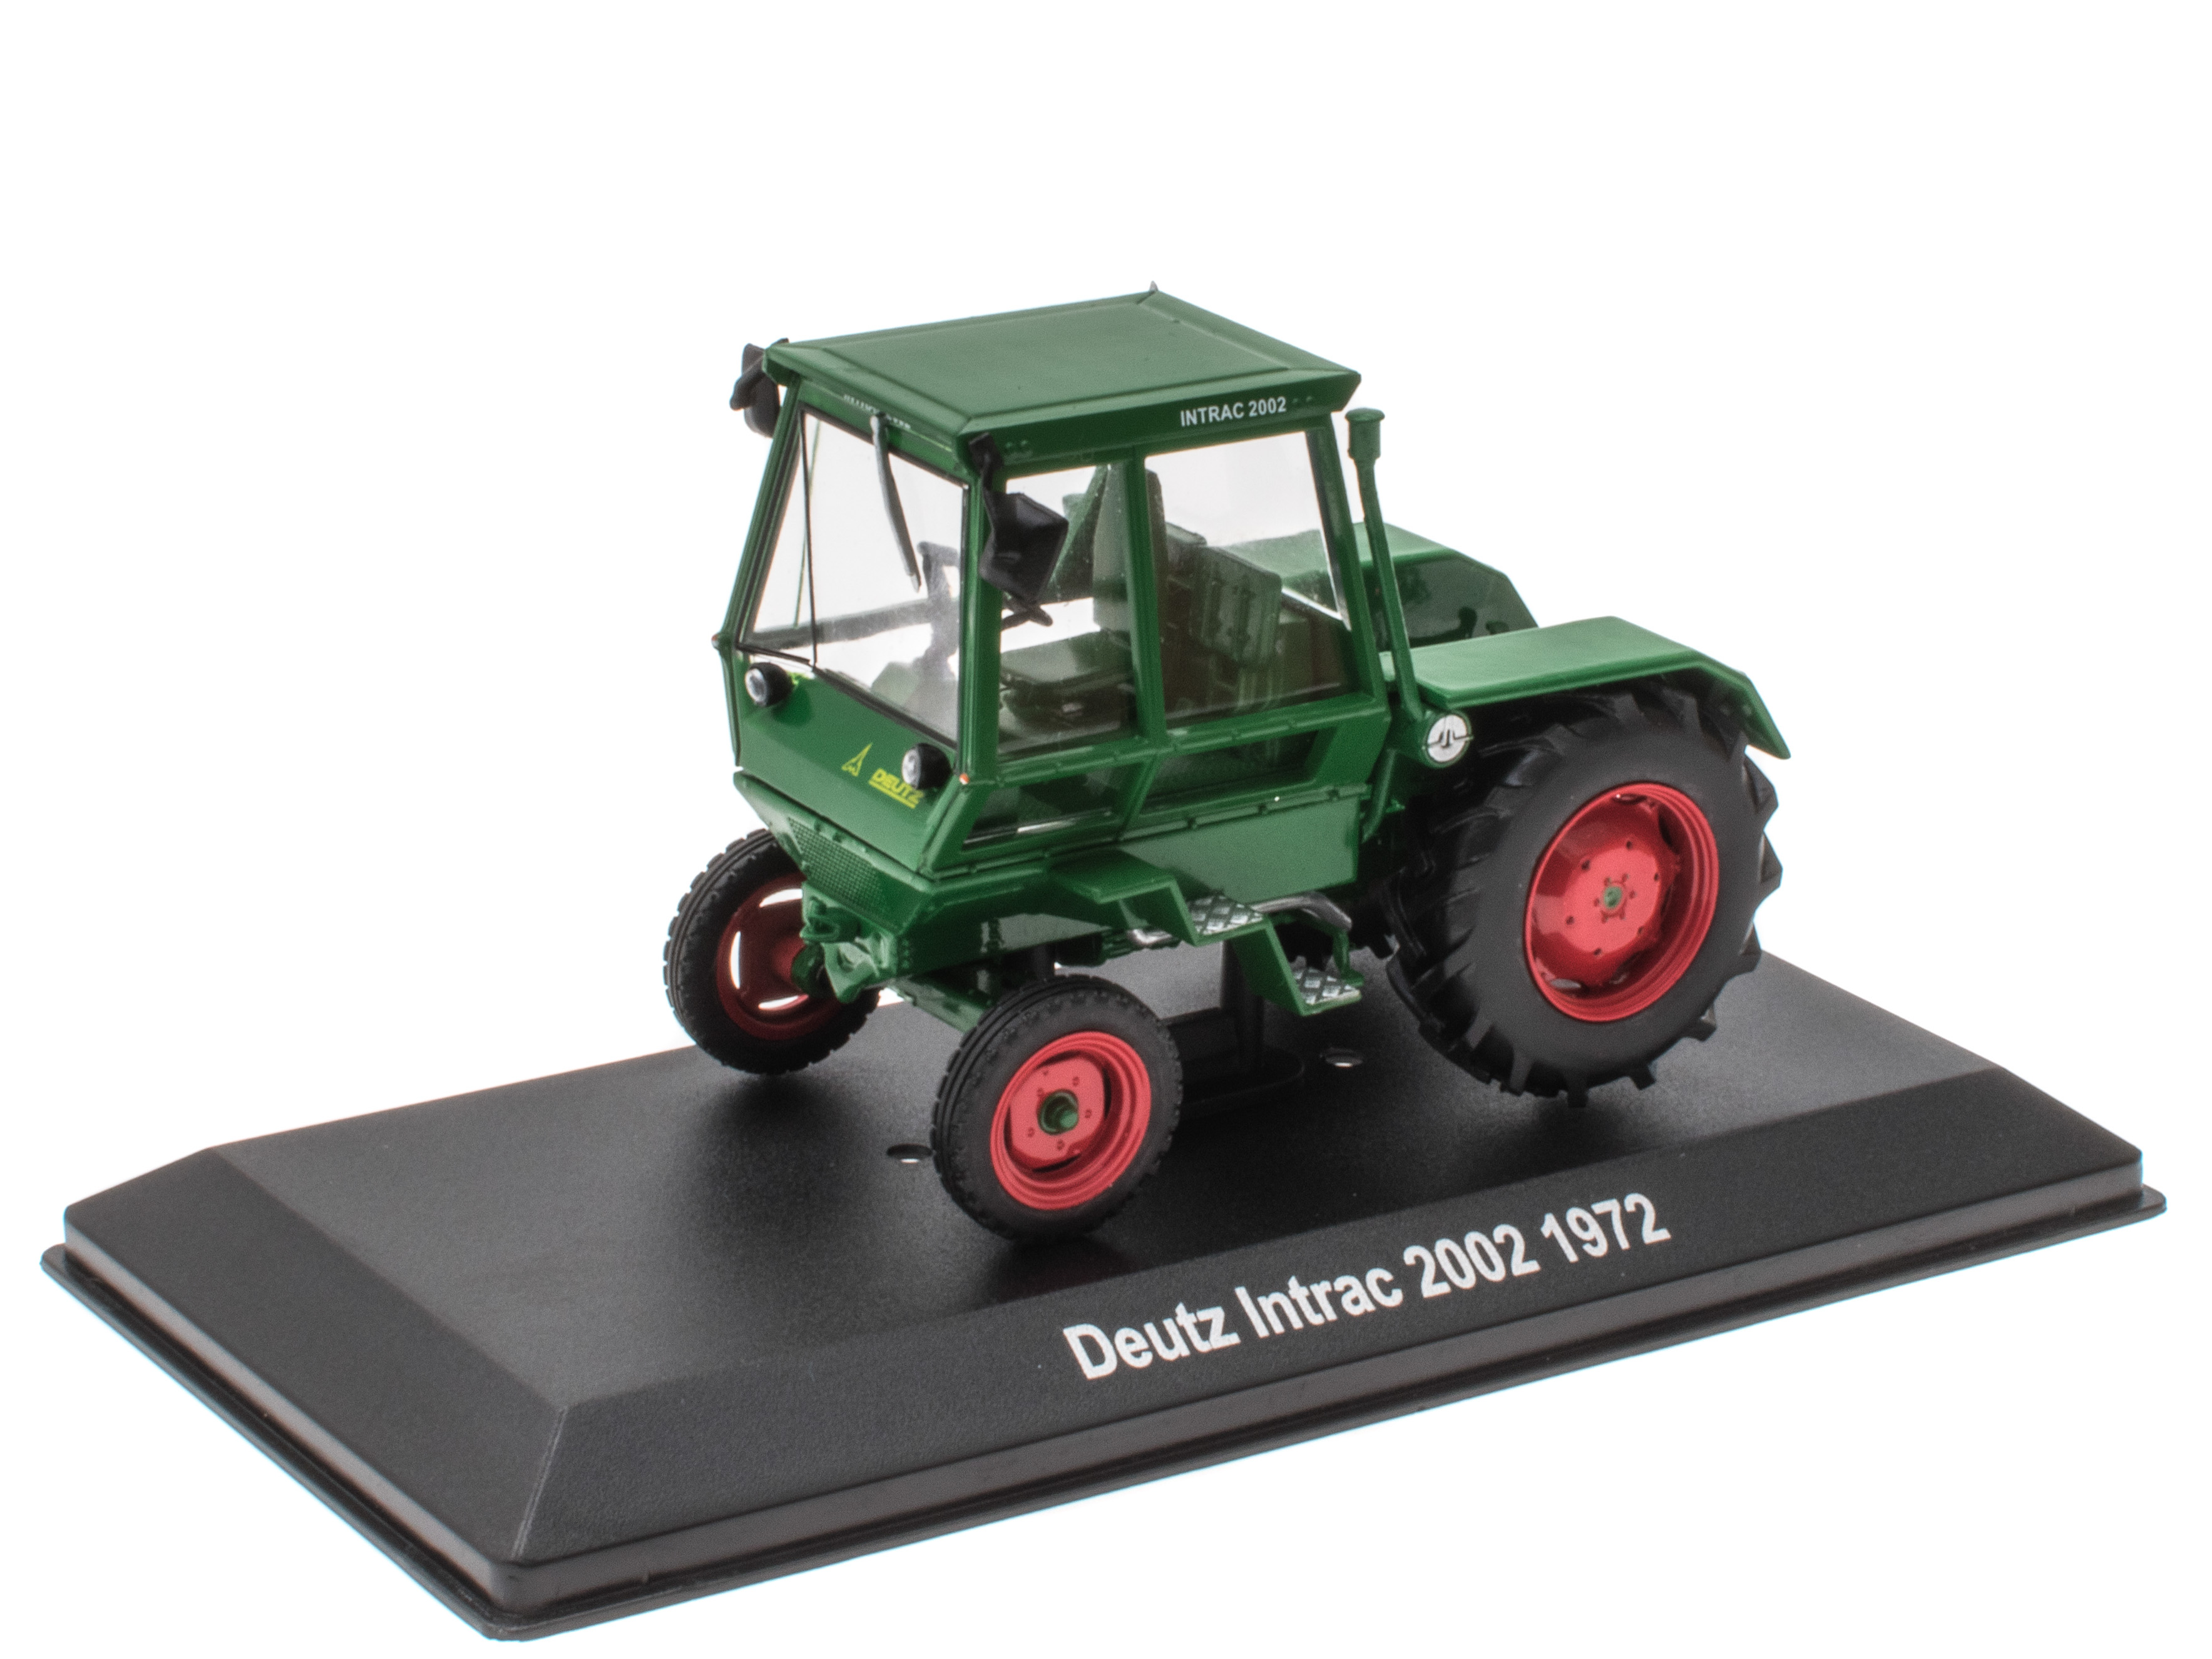 Deutz Intrac 2002 Tractor - 1972